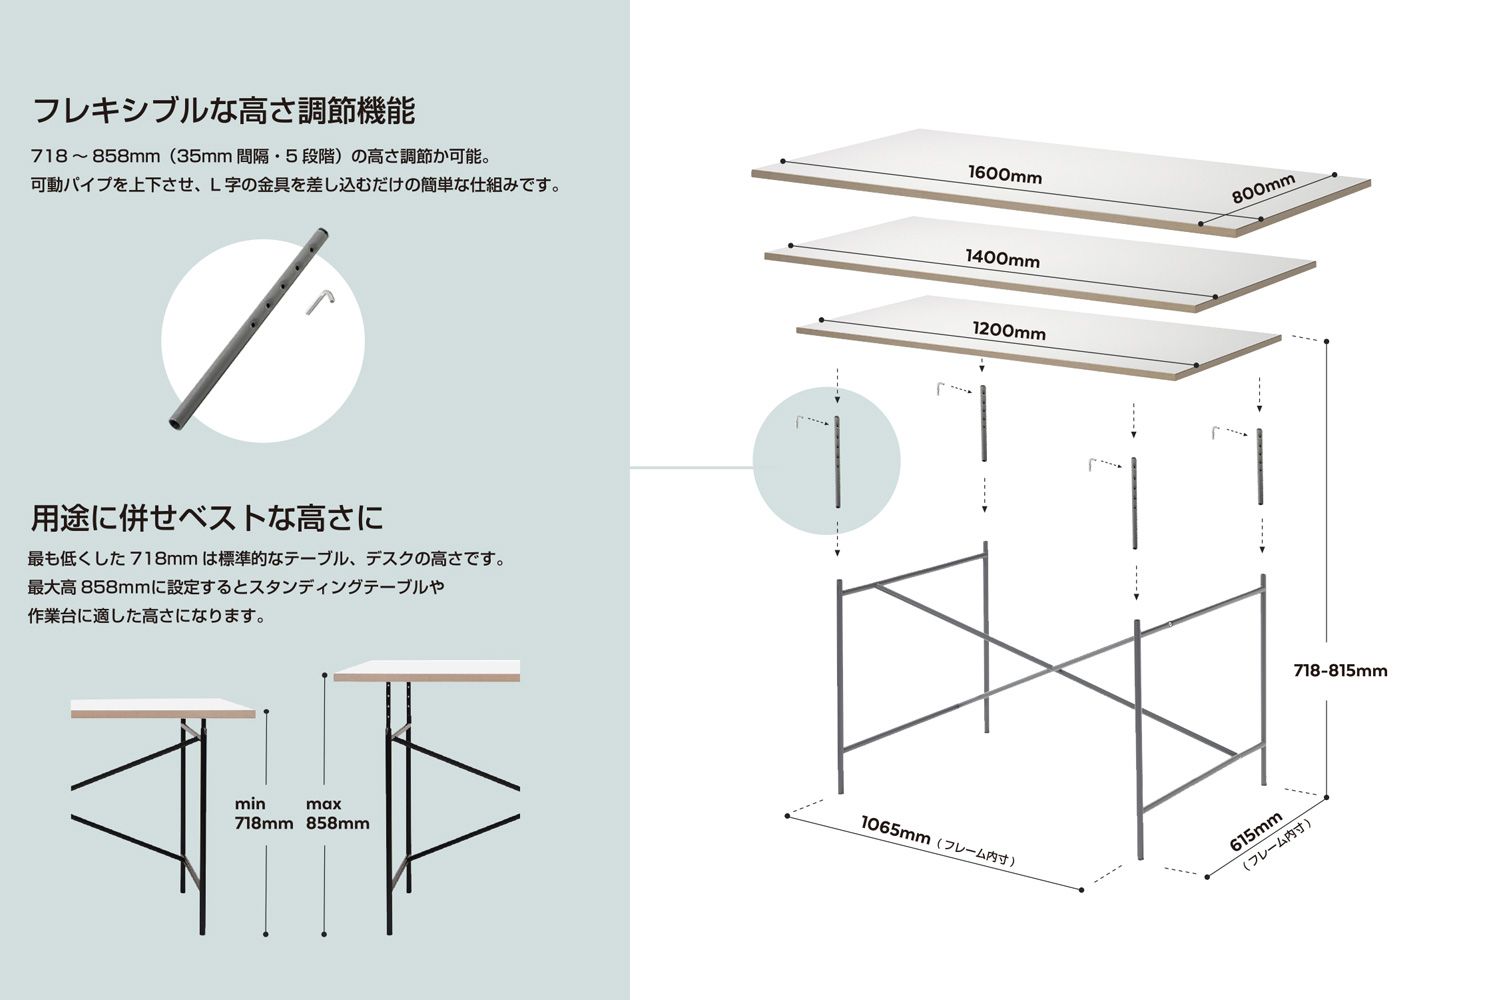 リチャード ランパート アイアーマン テーブル 2 5段階の高さ調整が可能です。（アイアーマンテーブル 2の天板はW160 x D80cmのみです）